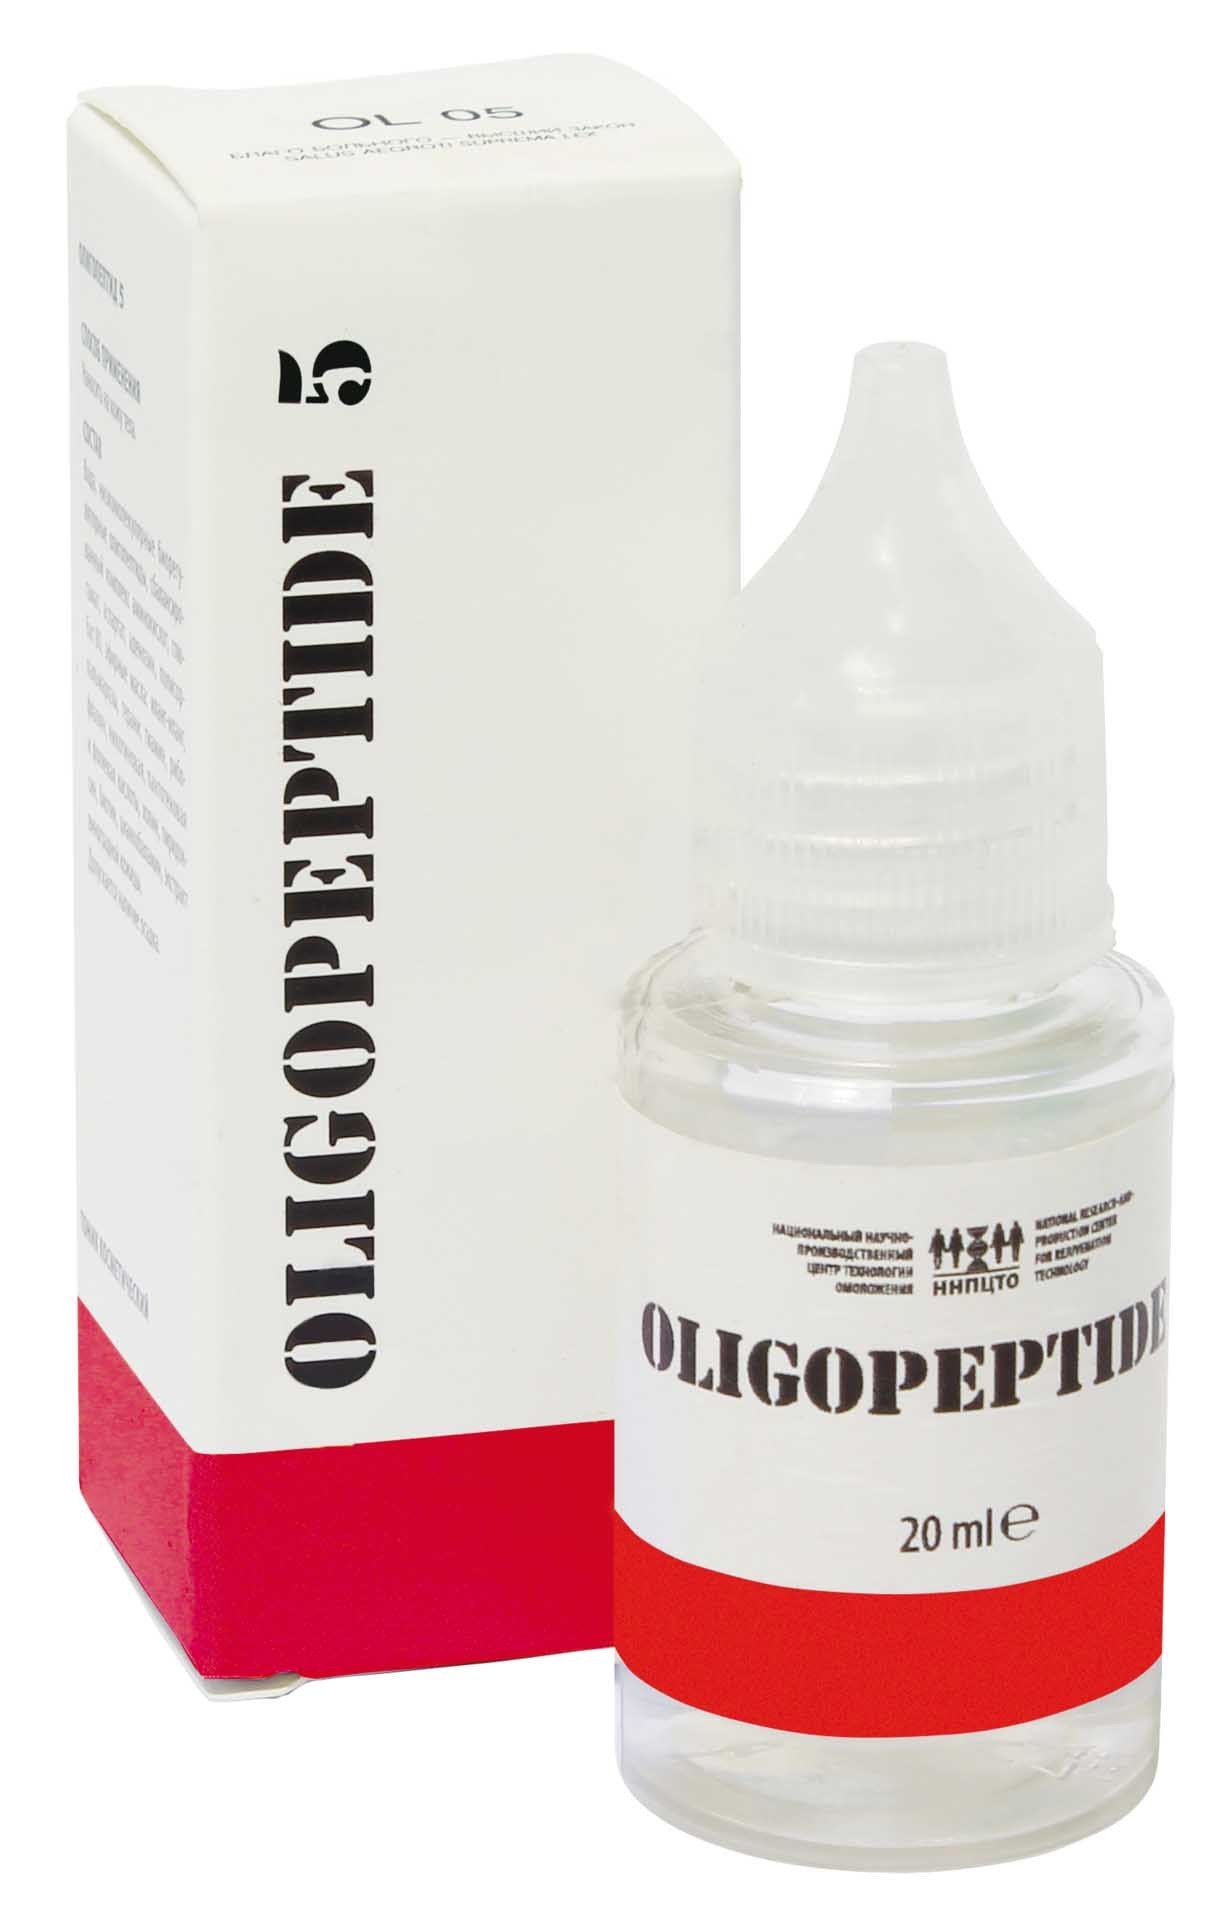 Олигопептид 05, купить Олигопептид 05, купить Олигопептид 05, Лавка лекаря, Монастырская аптека